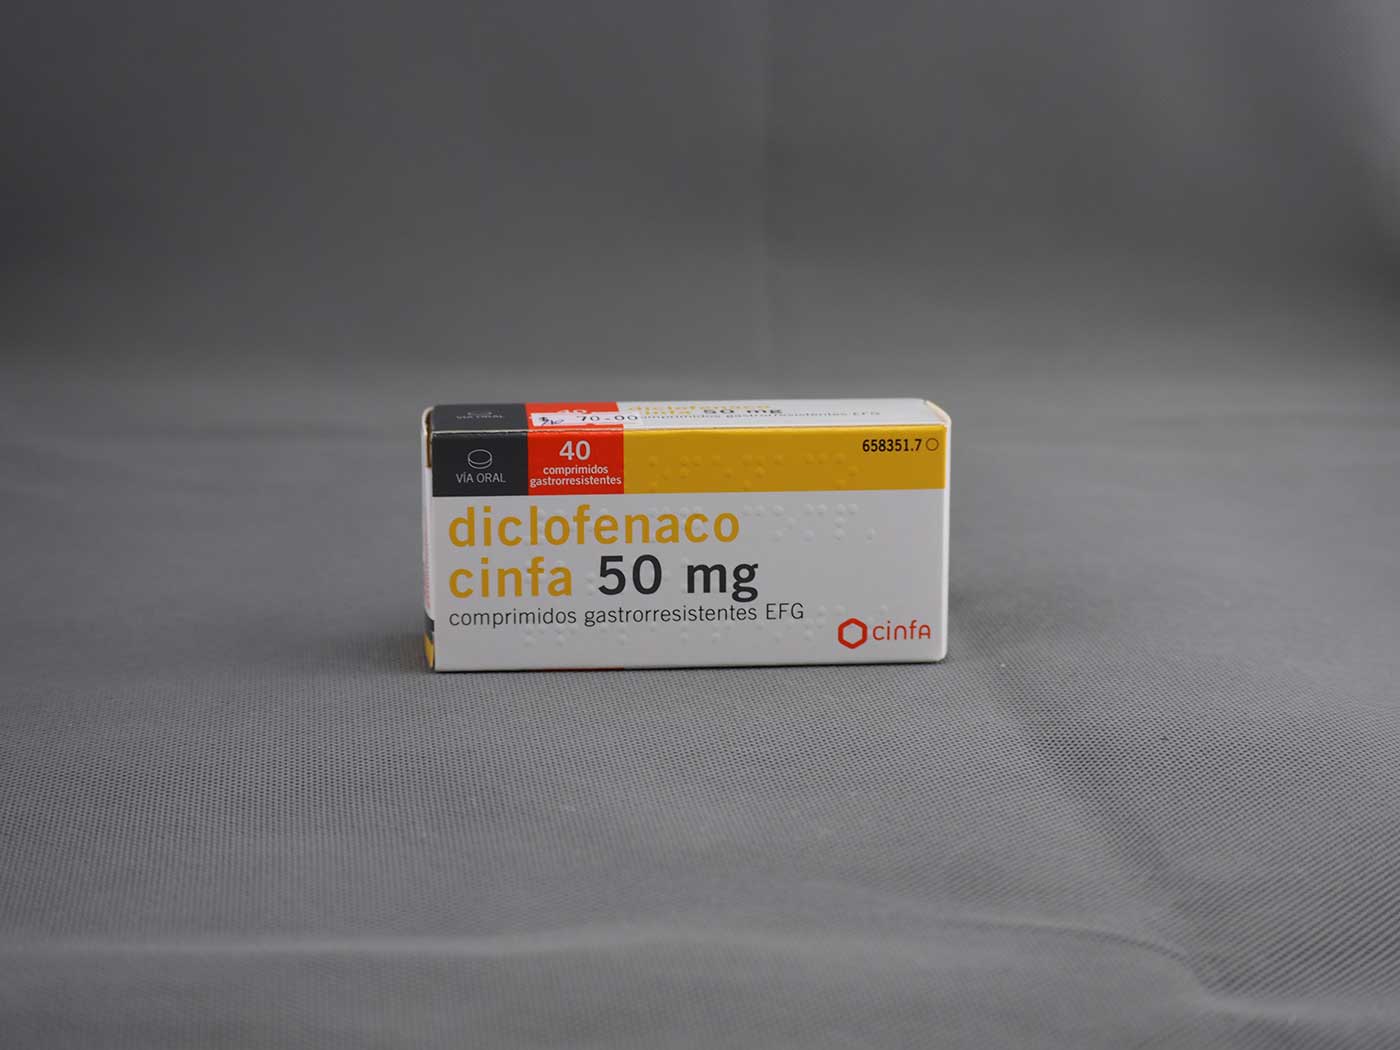 双氯芬酸diclofenac药品图片